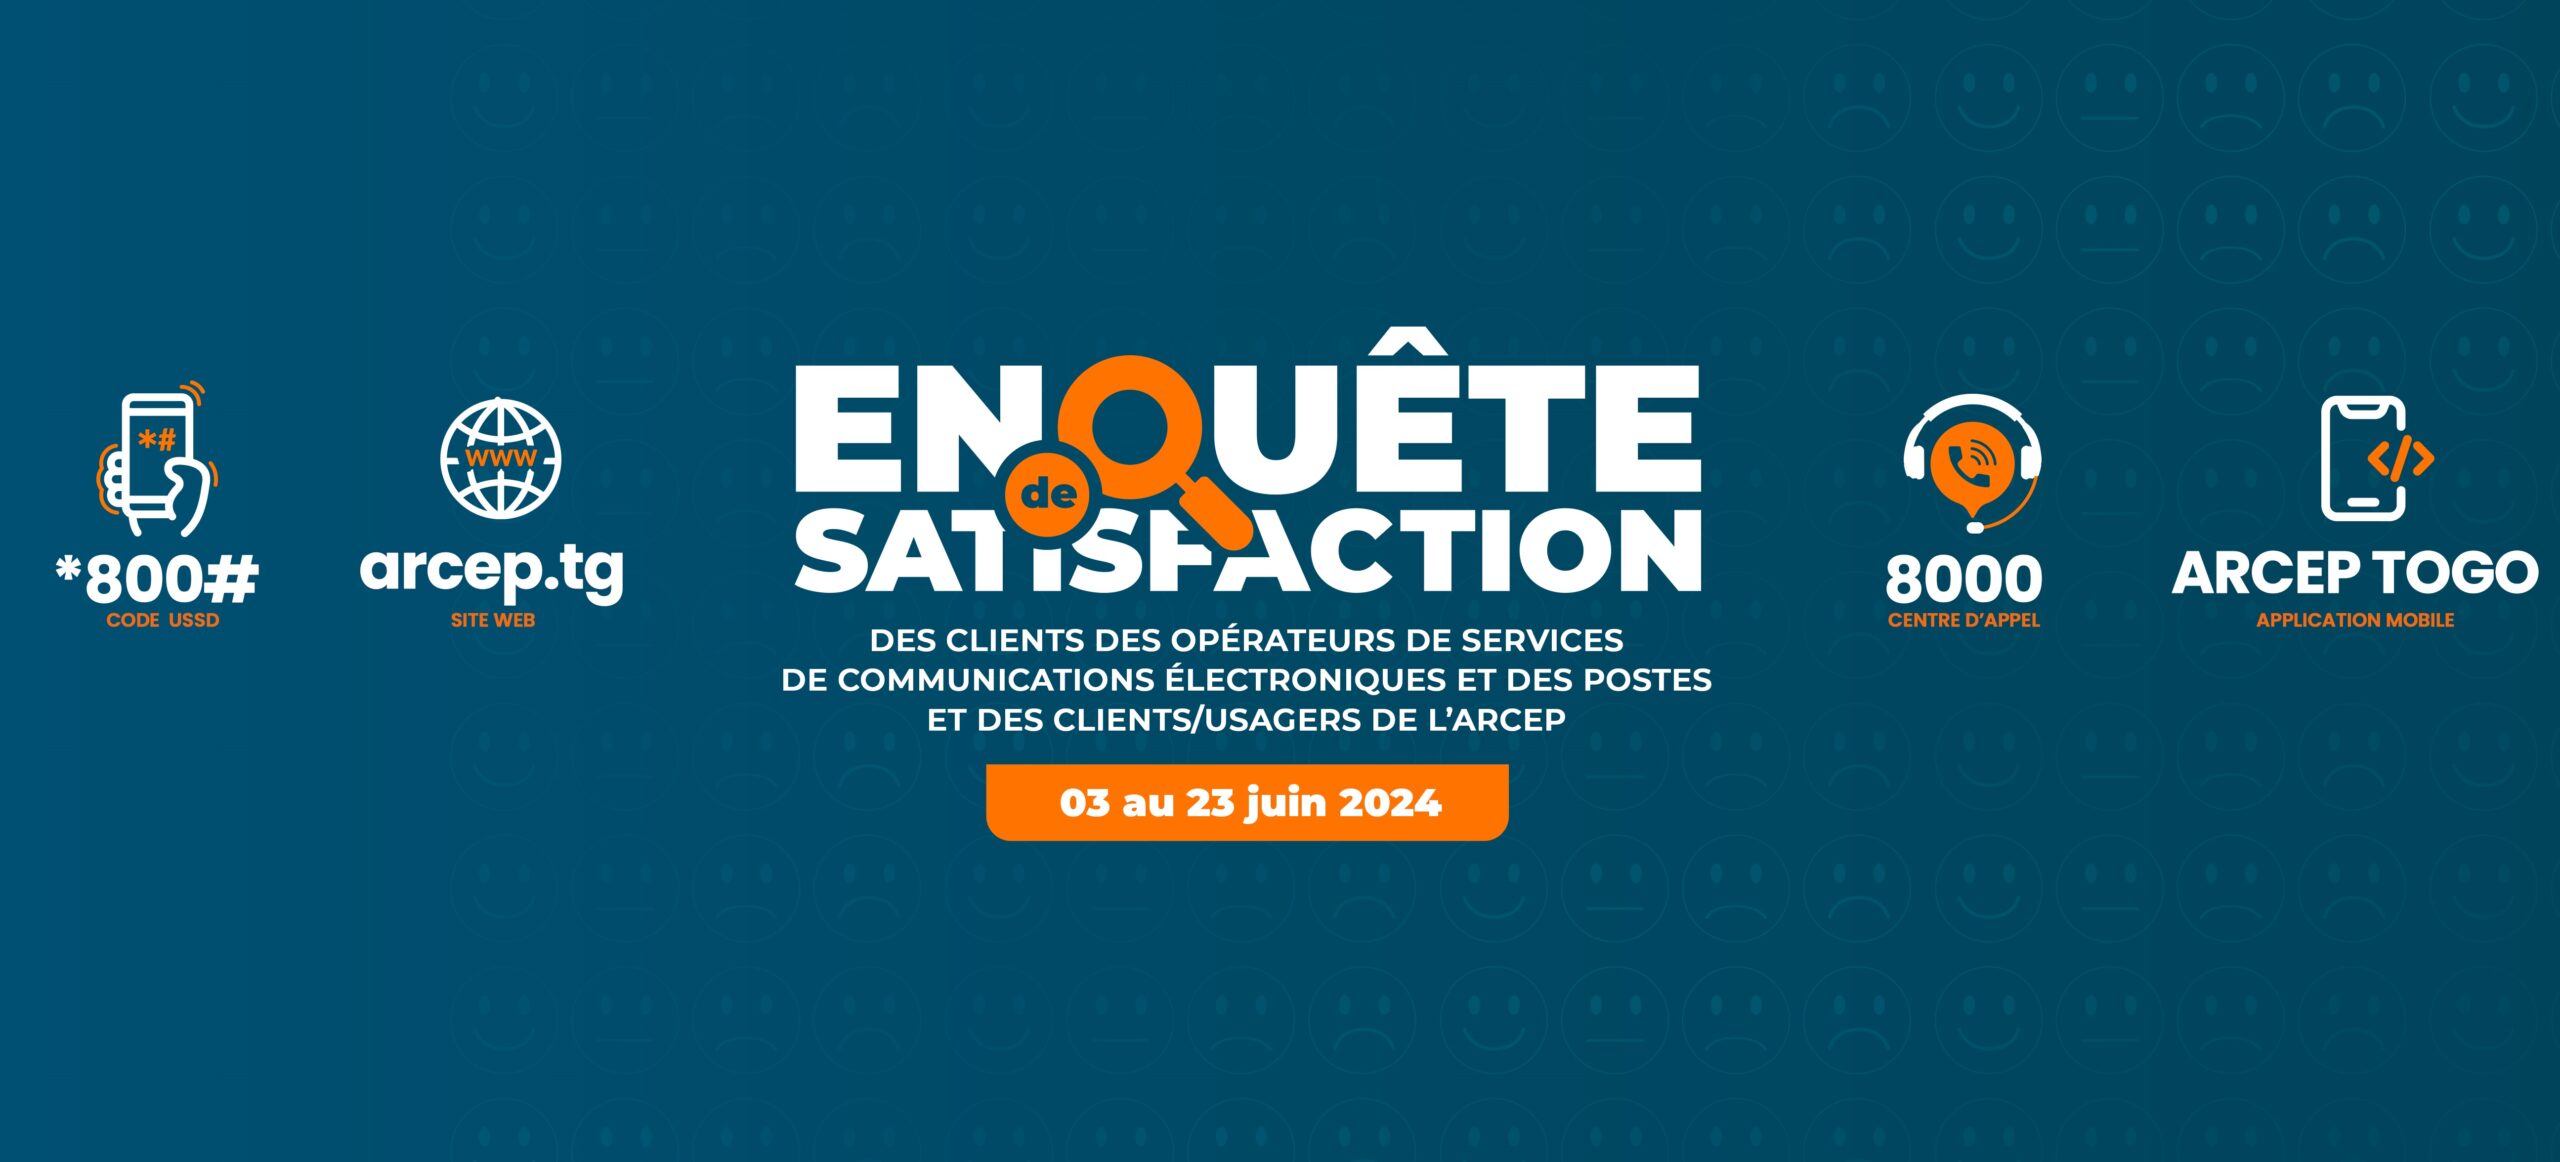 You are currently viewing Enquête de satisfaction des clients des fournisseurs d’accès internet et des opérateurs mobiles